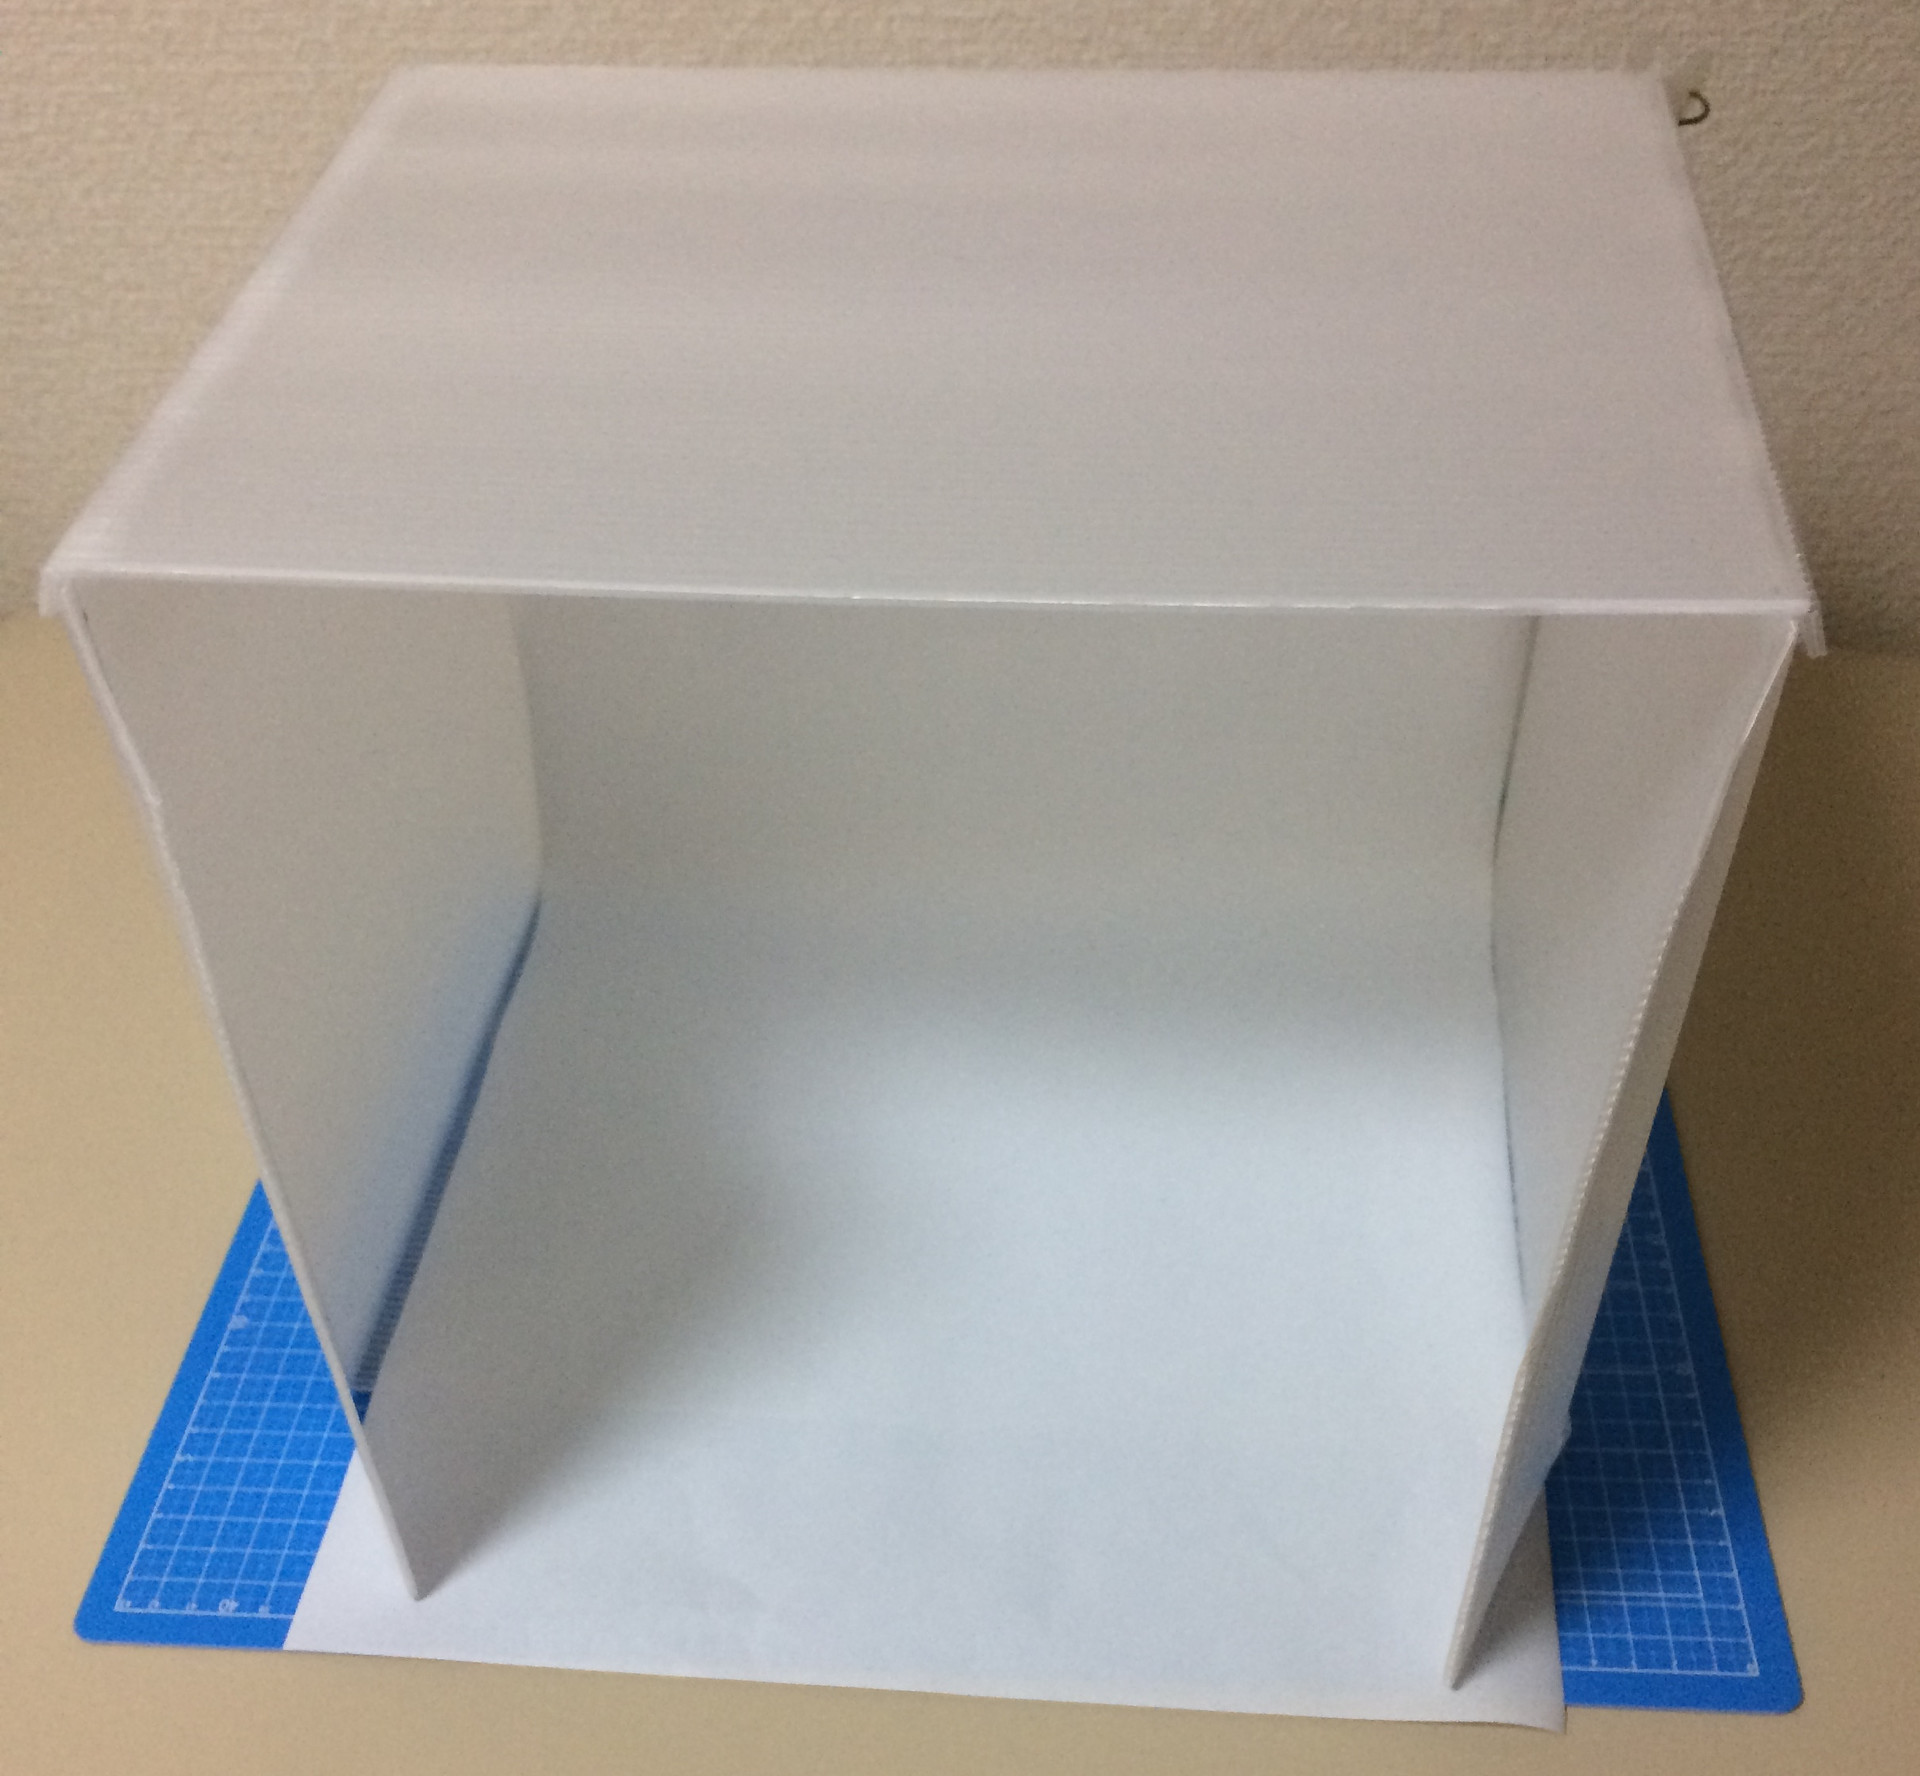 100均材料で 折りたたみできる撮影ボックスを作成 プログラマの歩き方